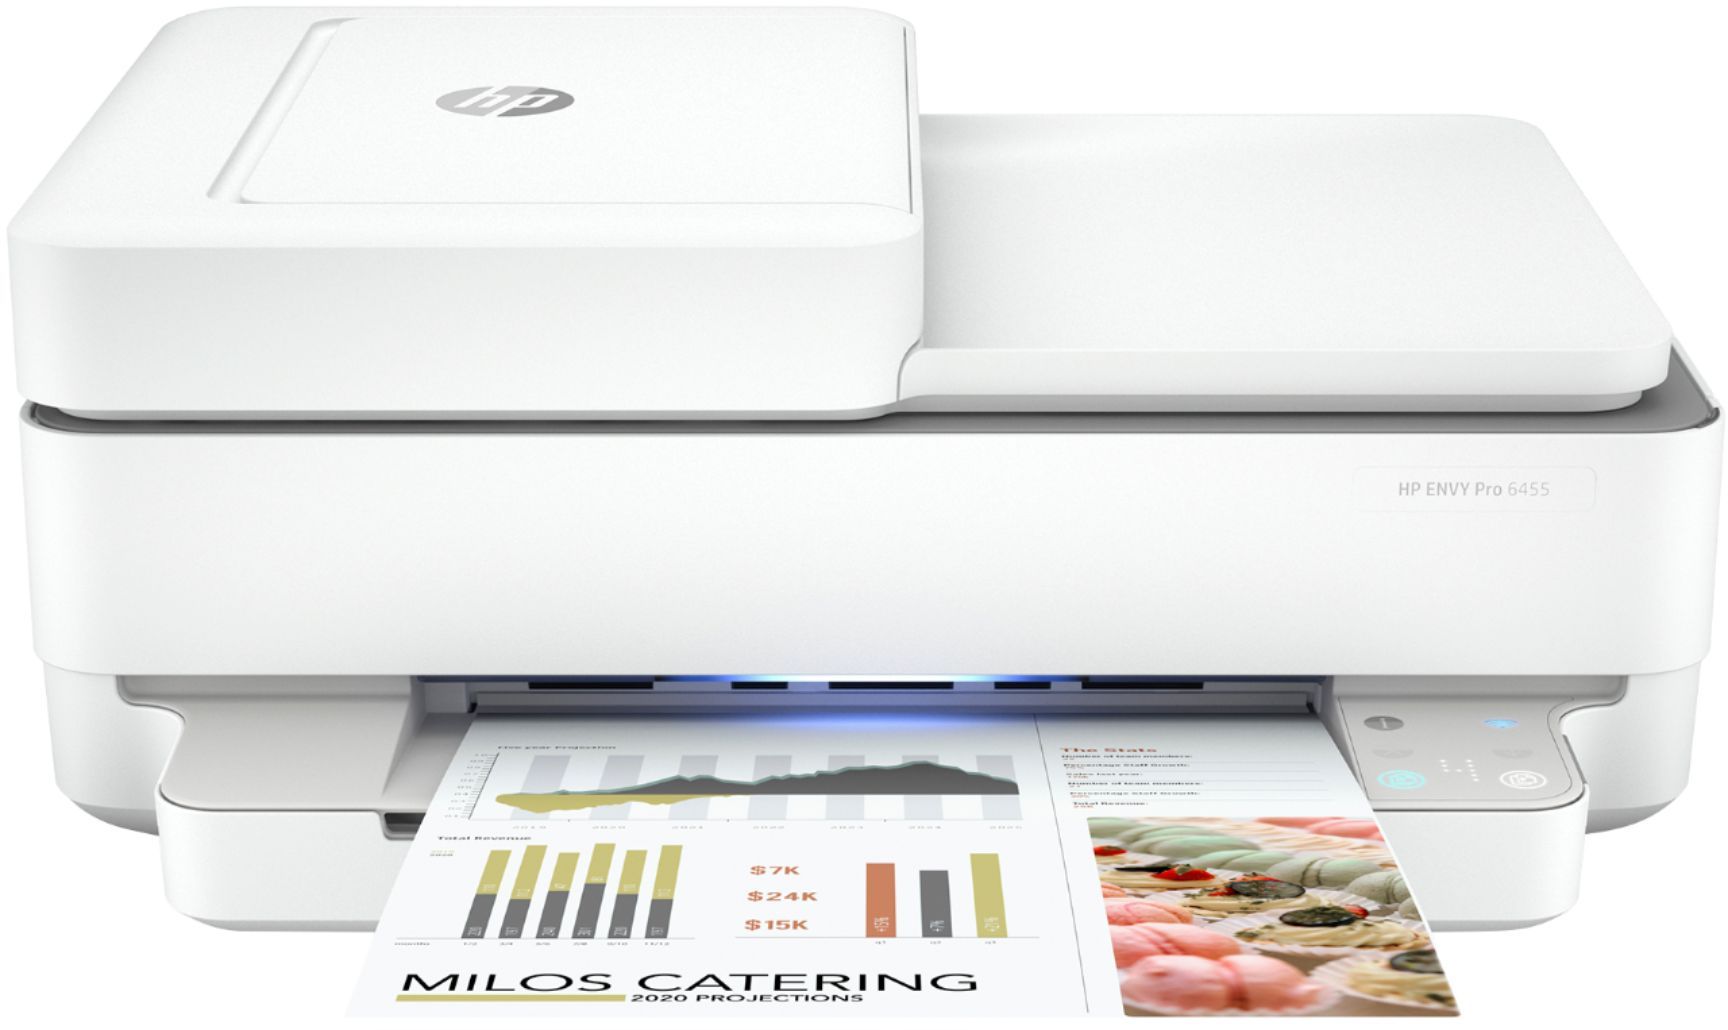 HP ENVY Pro 6455 Wireless All-In-One Instant Ink-Ready Inkjet Printer White 5SE45A#B1F - Best Buy | Best Buy U.S.